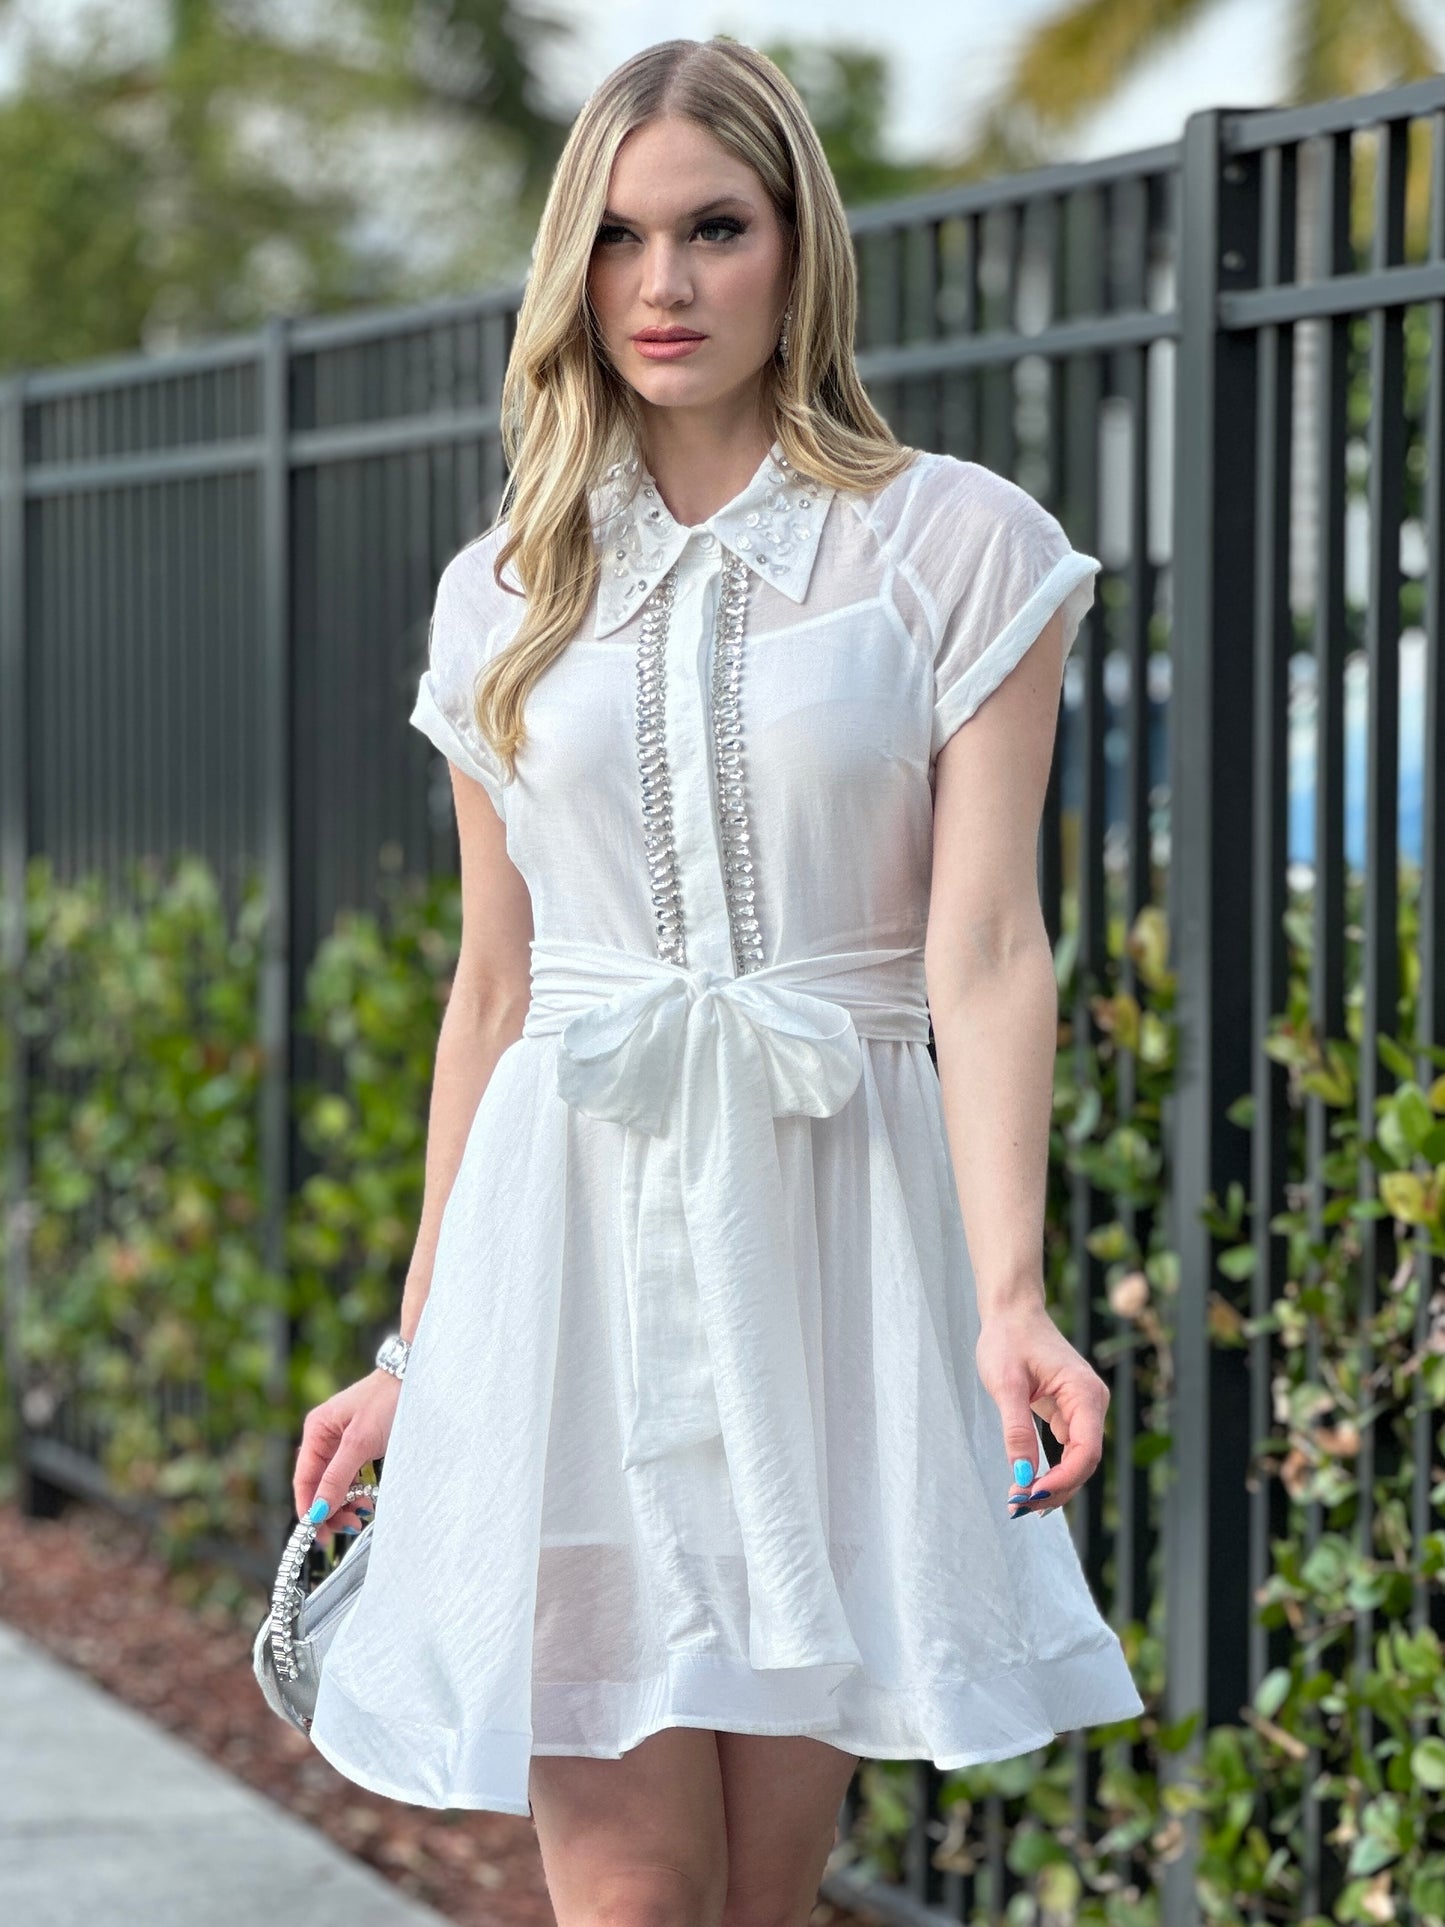 Lirio White Rhinestone Dress